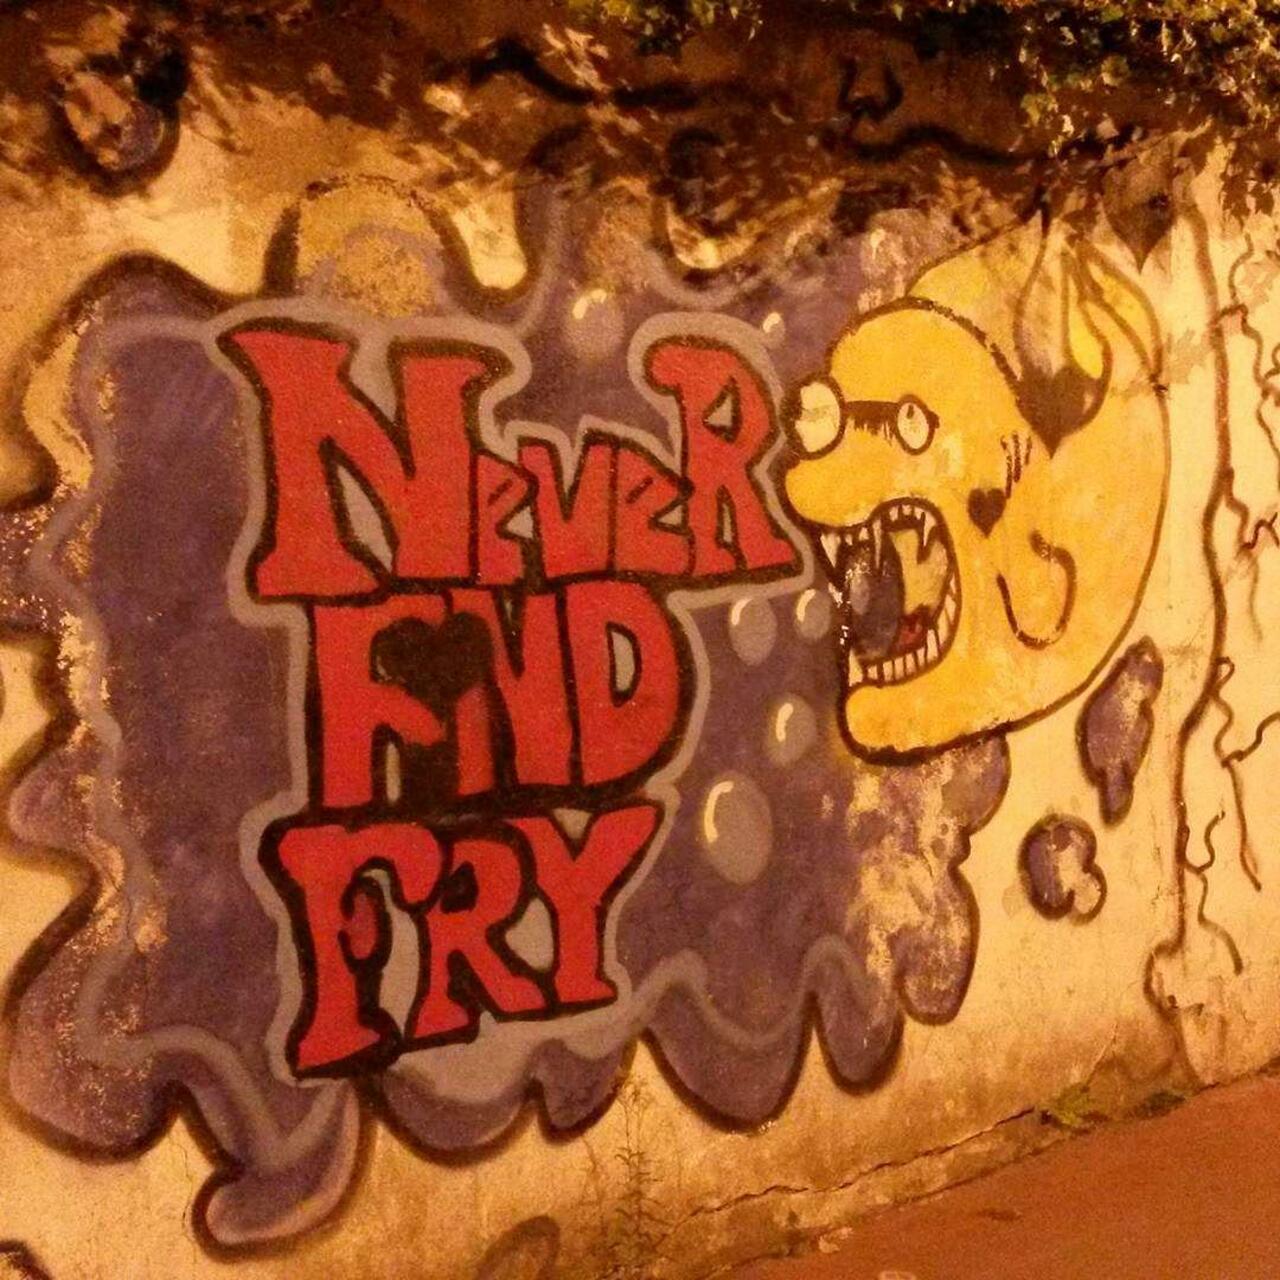 #Paris #graffiti photo by @le_cyclopede http://ift.tt/1OAnV2u #StreetArt http://t.co/JsyegJt73Z